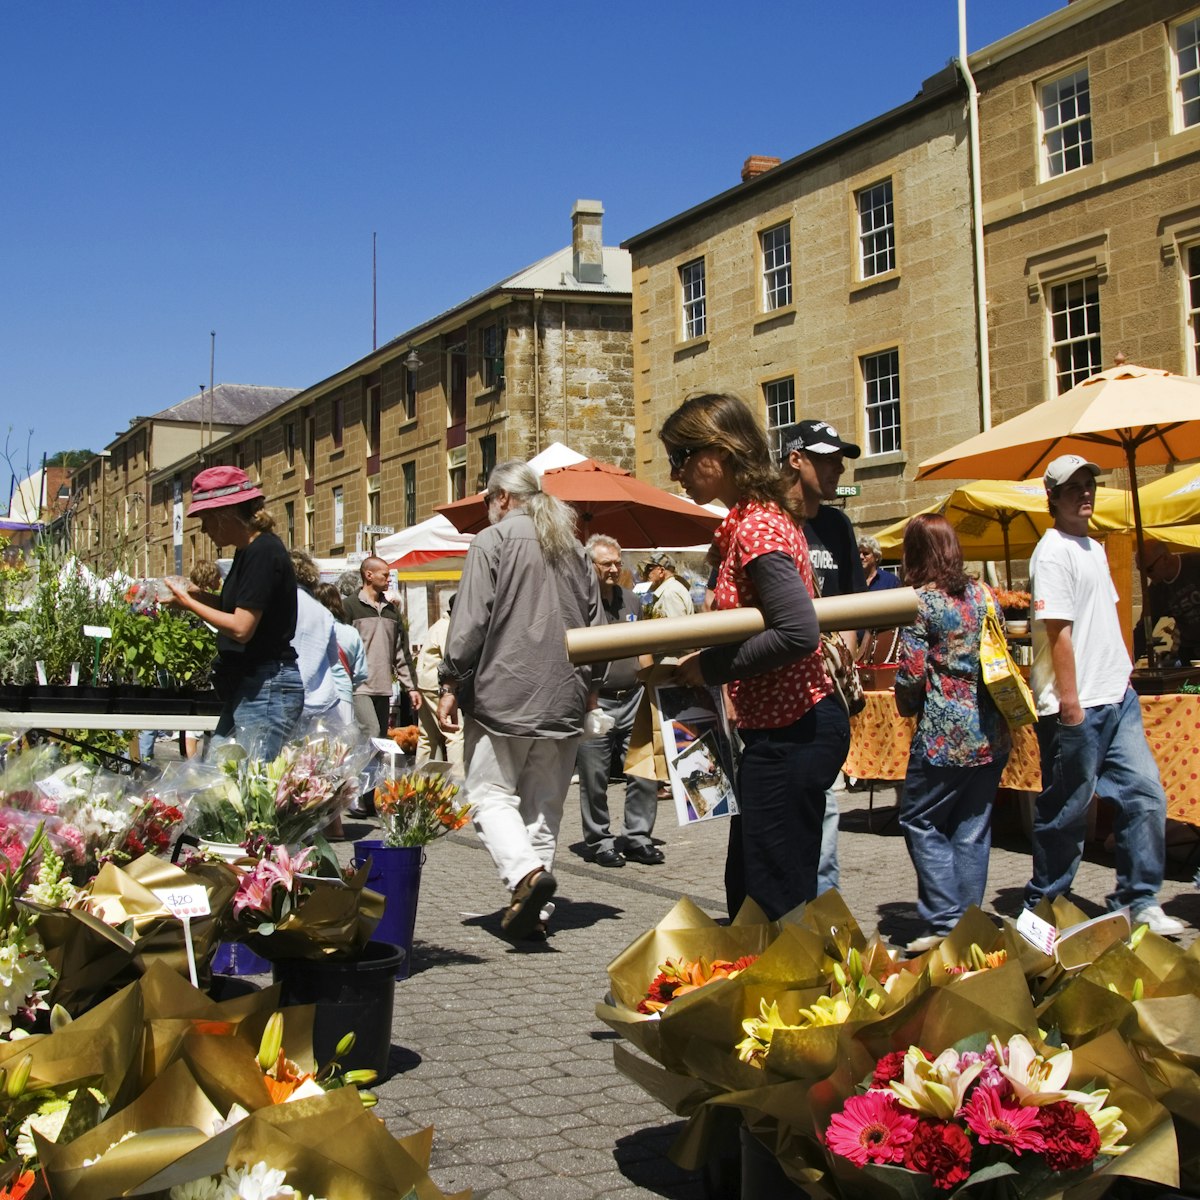 Australia, Tasmania, Hobart, Salamanca Street. Market flower stall.